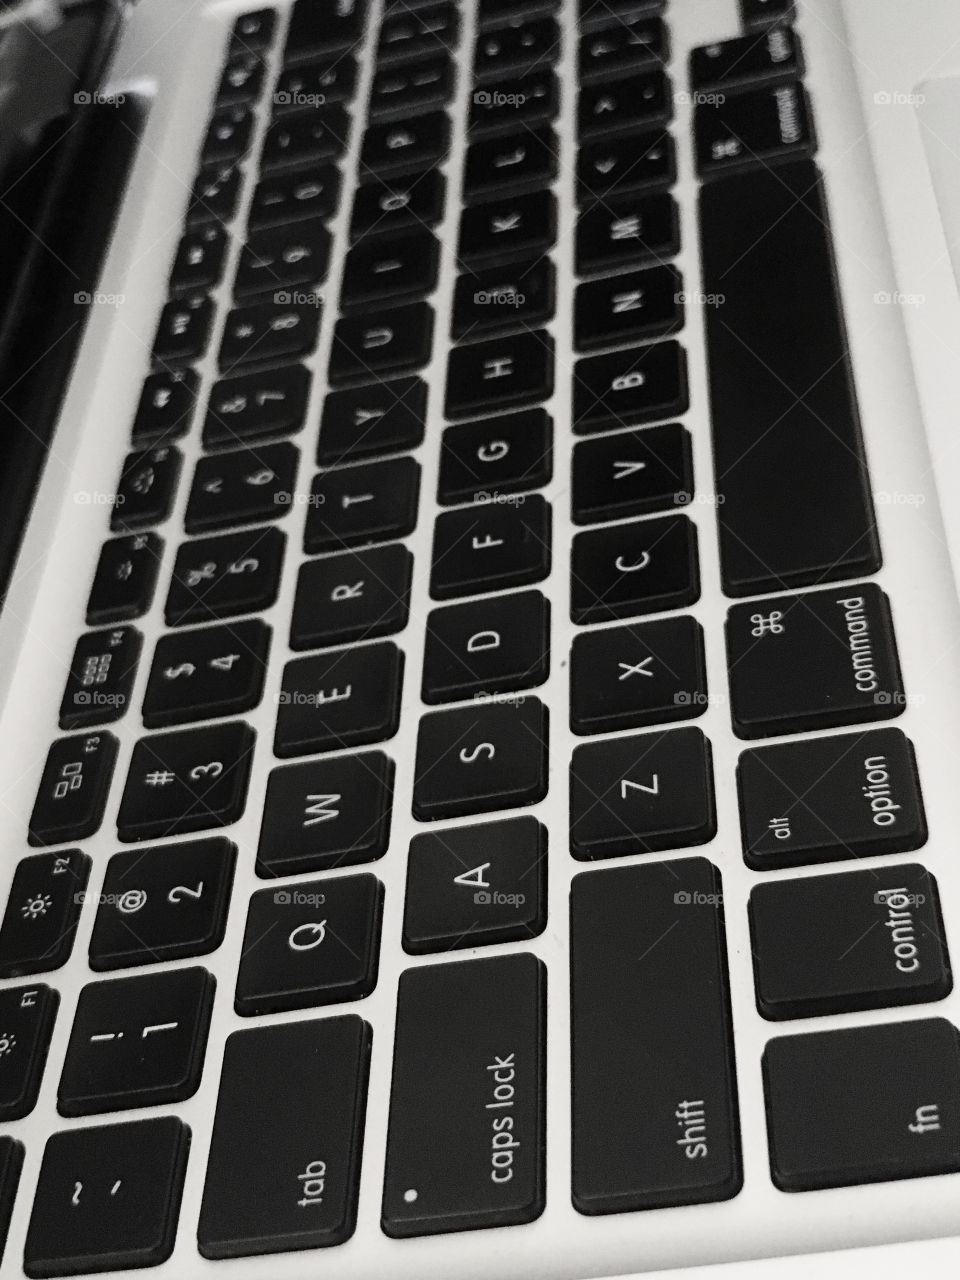 Macbook pro keyboard